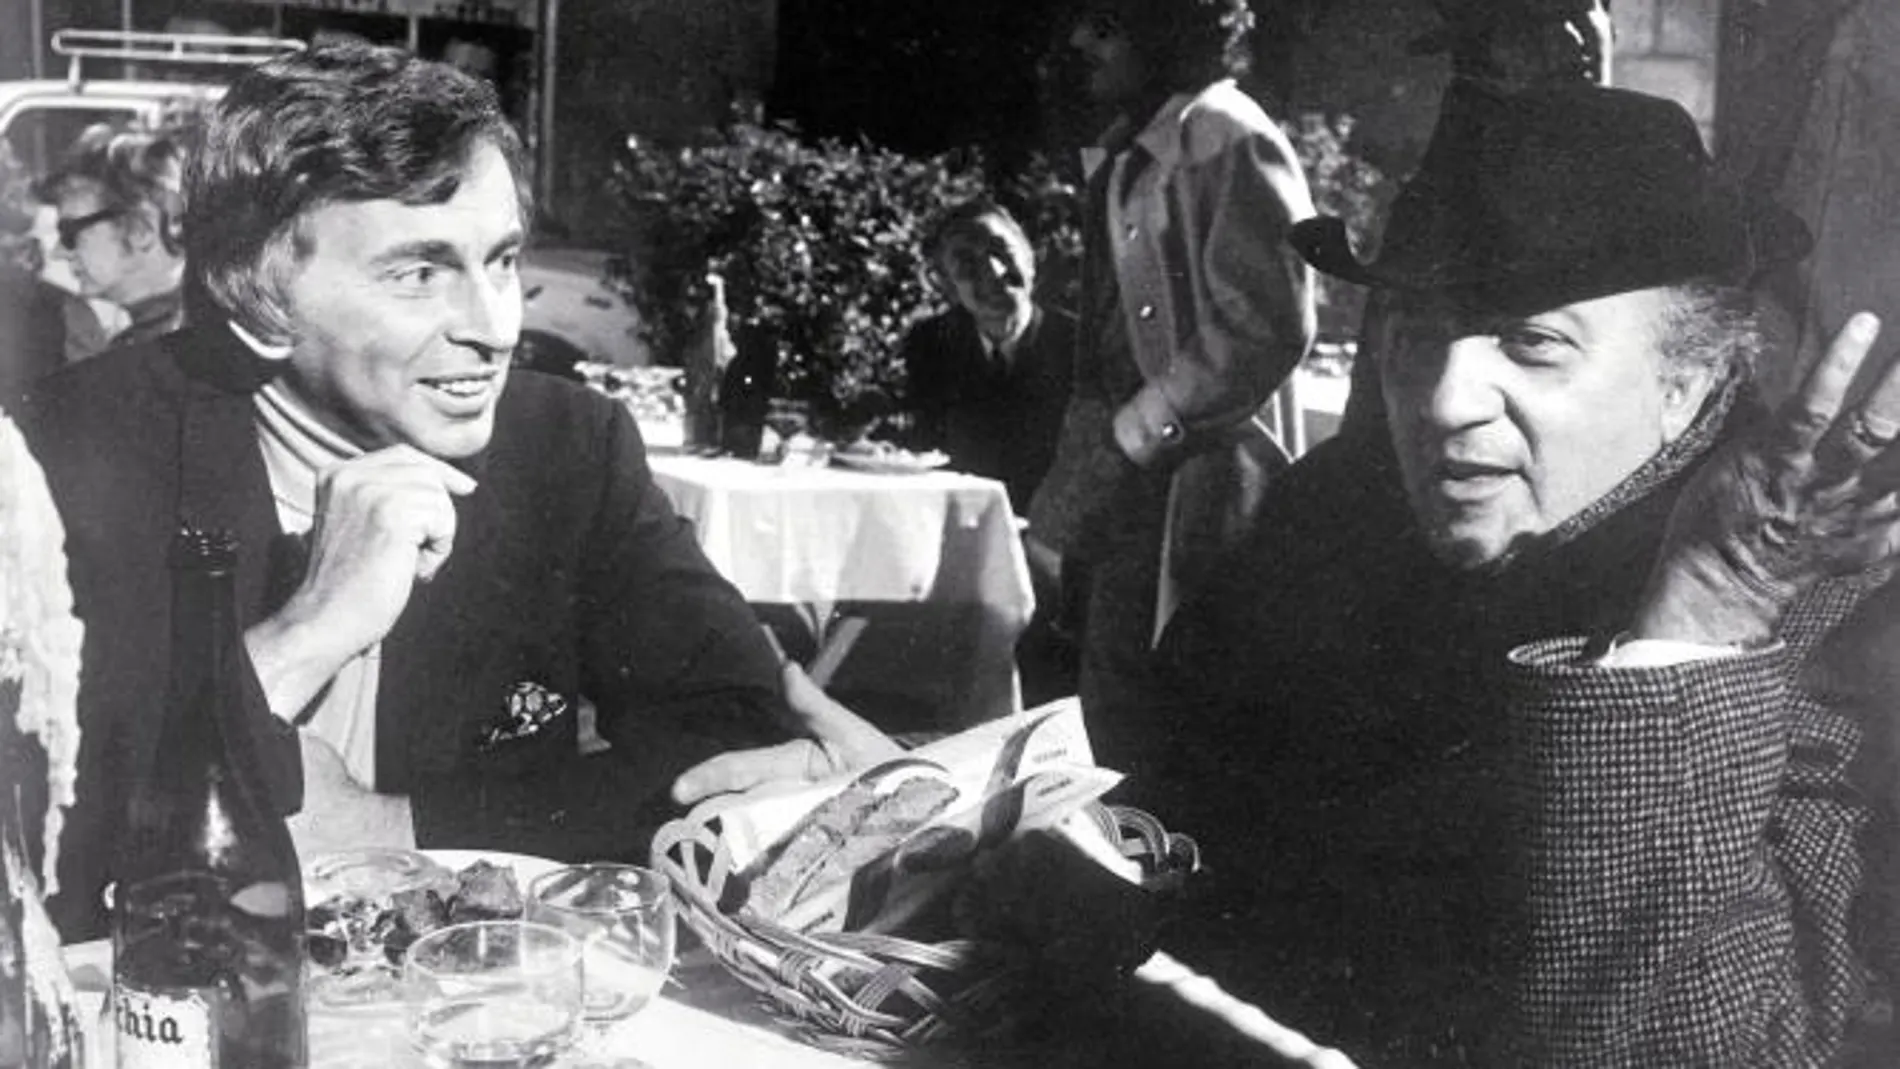 buena amistad Para el maestro Fellini escribió el guión de «Casanova»